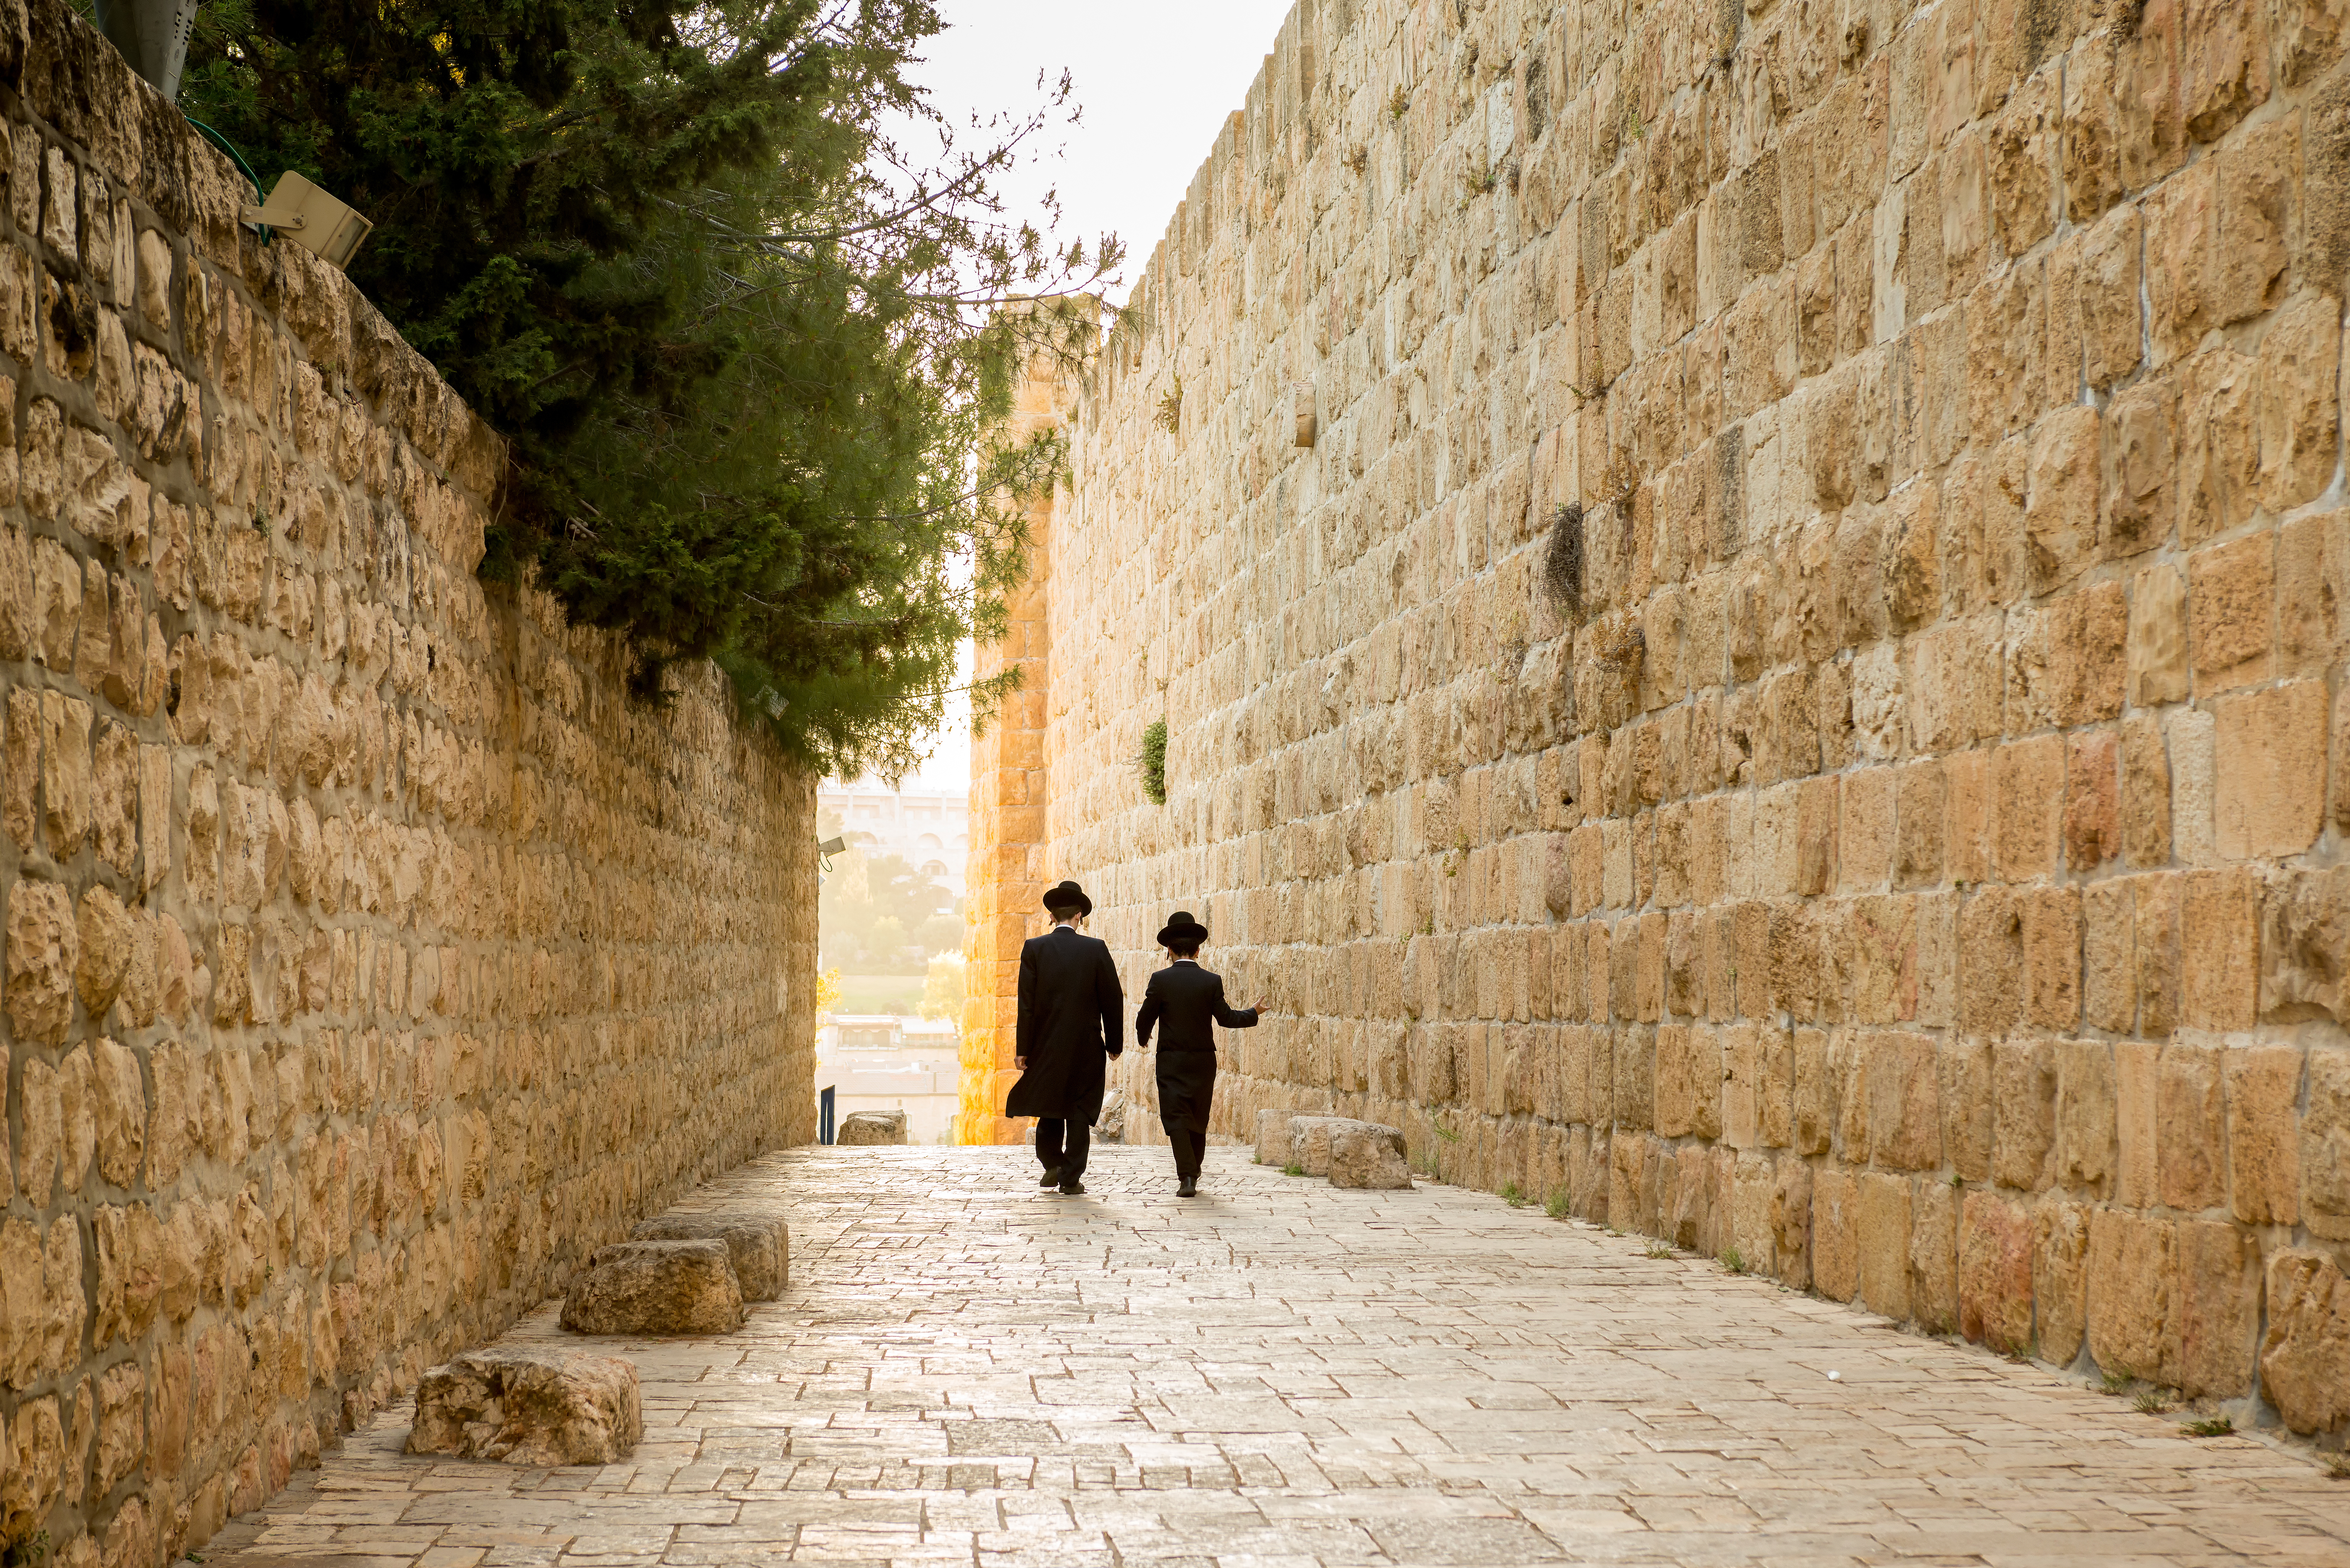 two men walking down a Jerusalem street